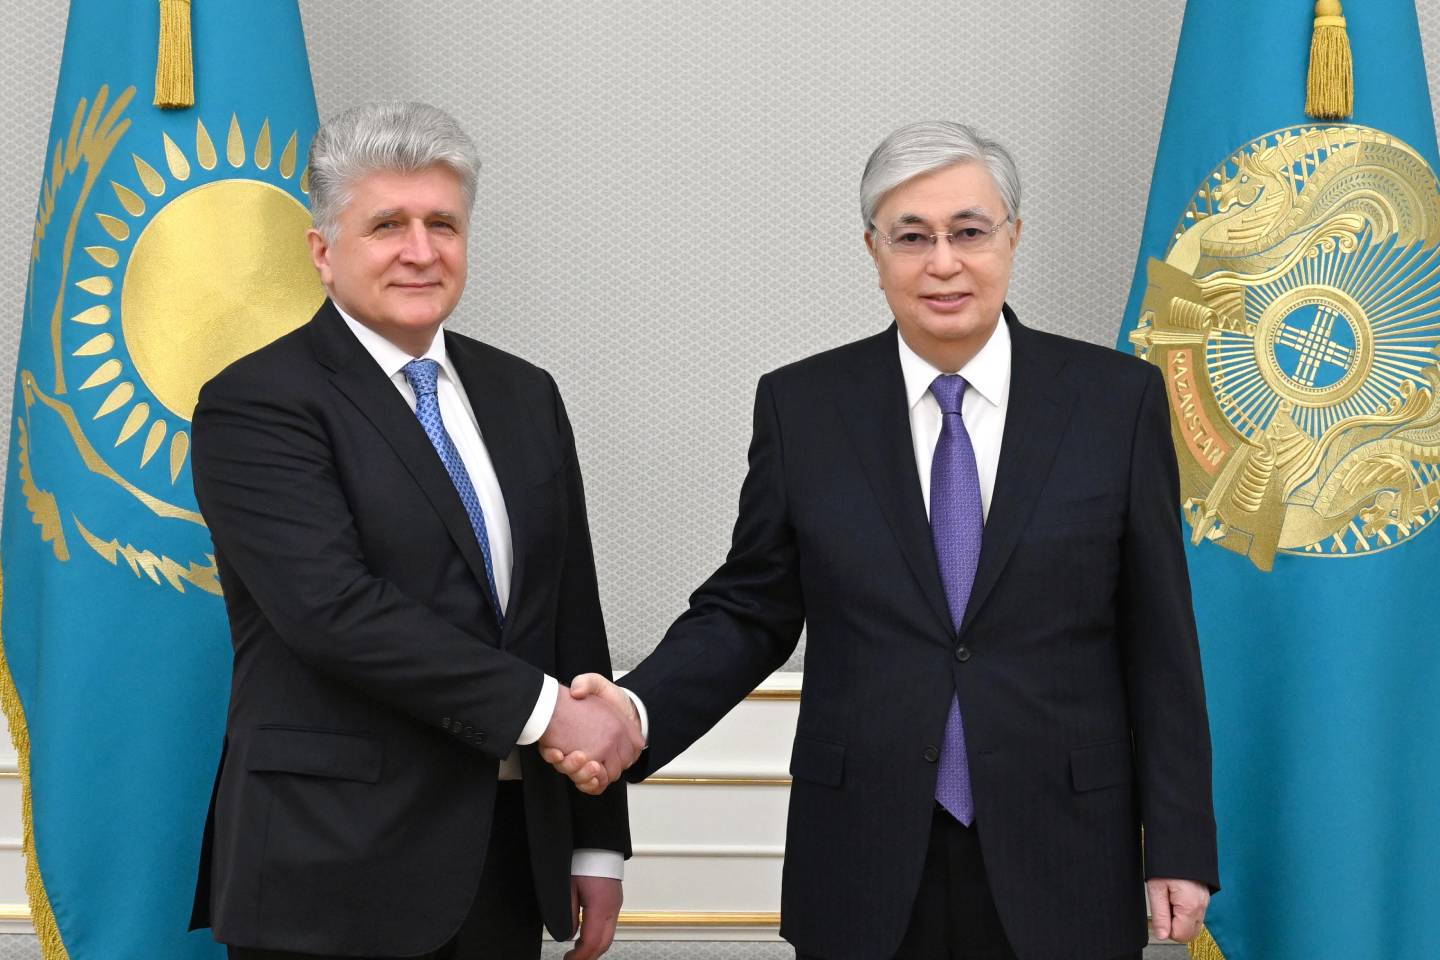 Новости мира / Политика в мире / Президент Казахстана принял высокопоставленного дипломата ООН